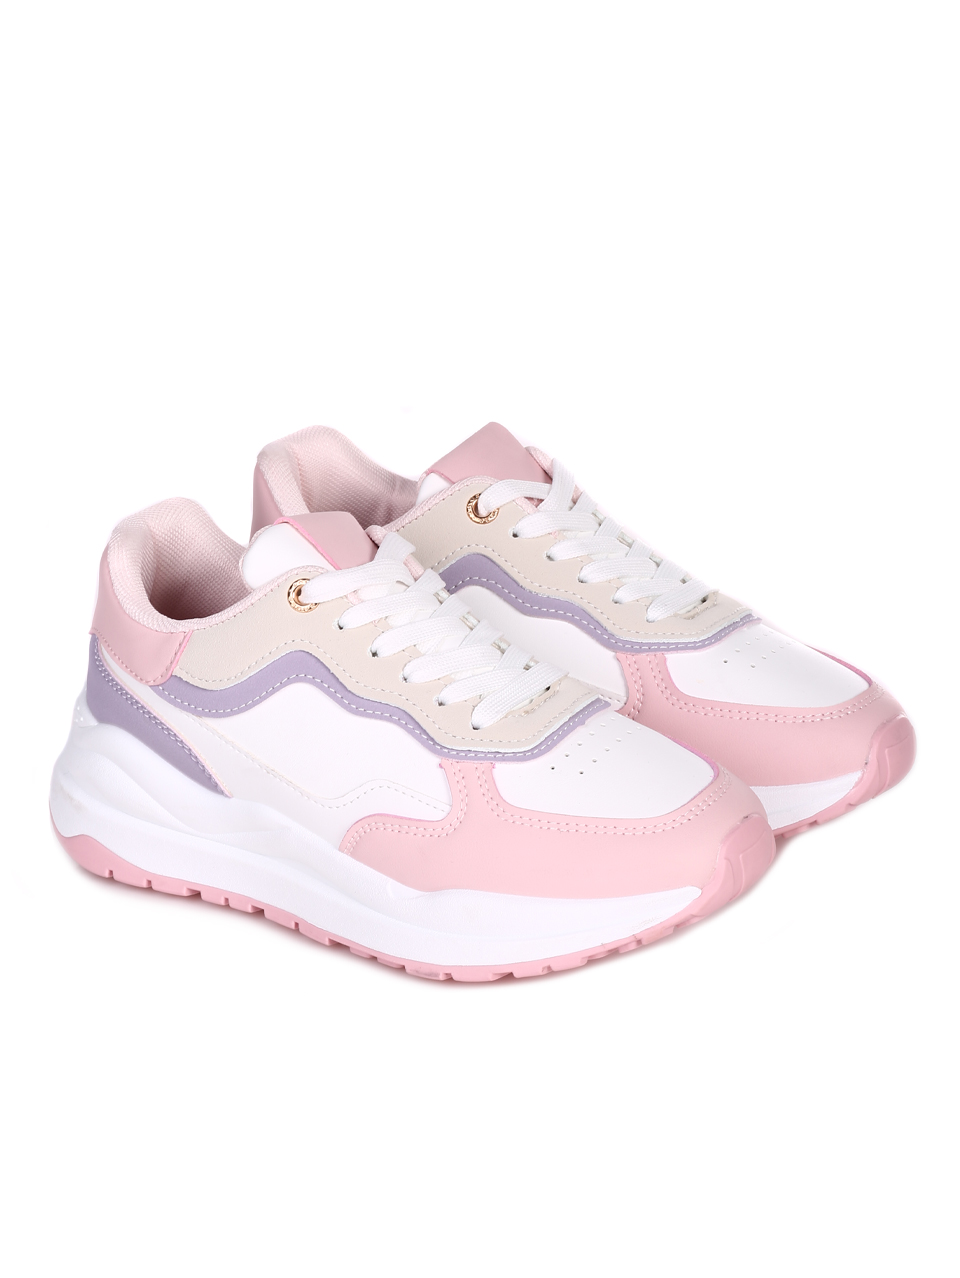 Ежедневни дамски комфортни обувки в бяло и розово 3U-23052 white/pink